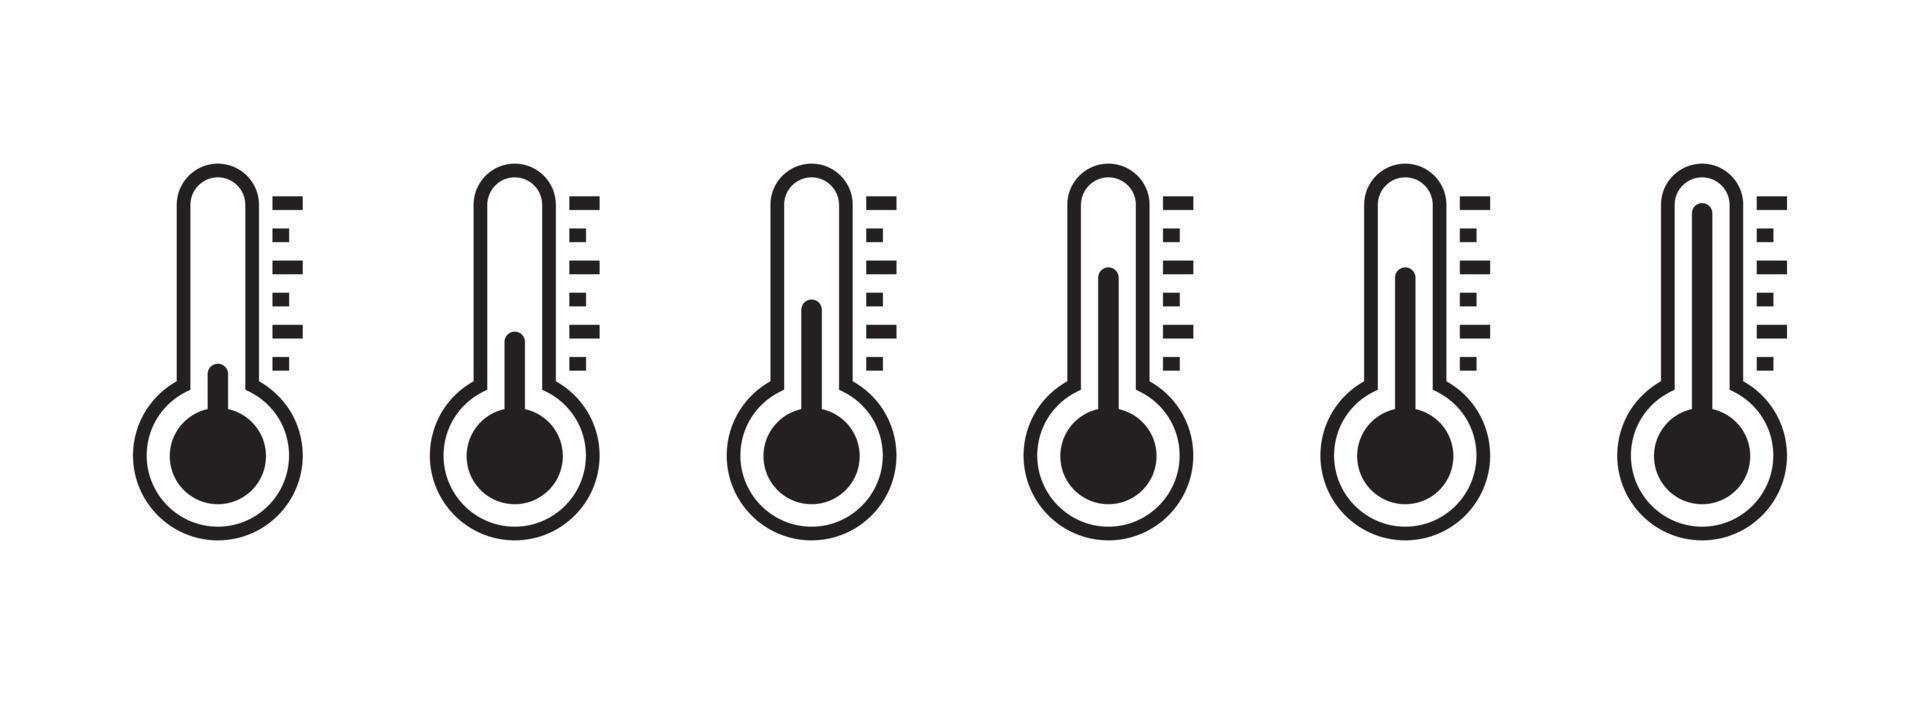 tempo de temperatura quente e ilustração plana de previsão de clima. vetor